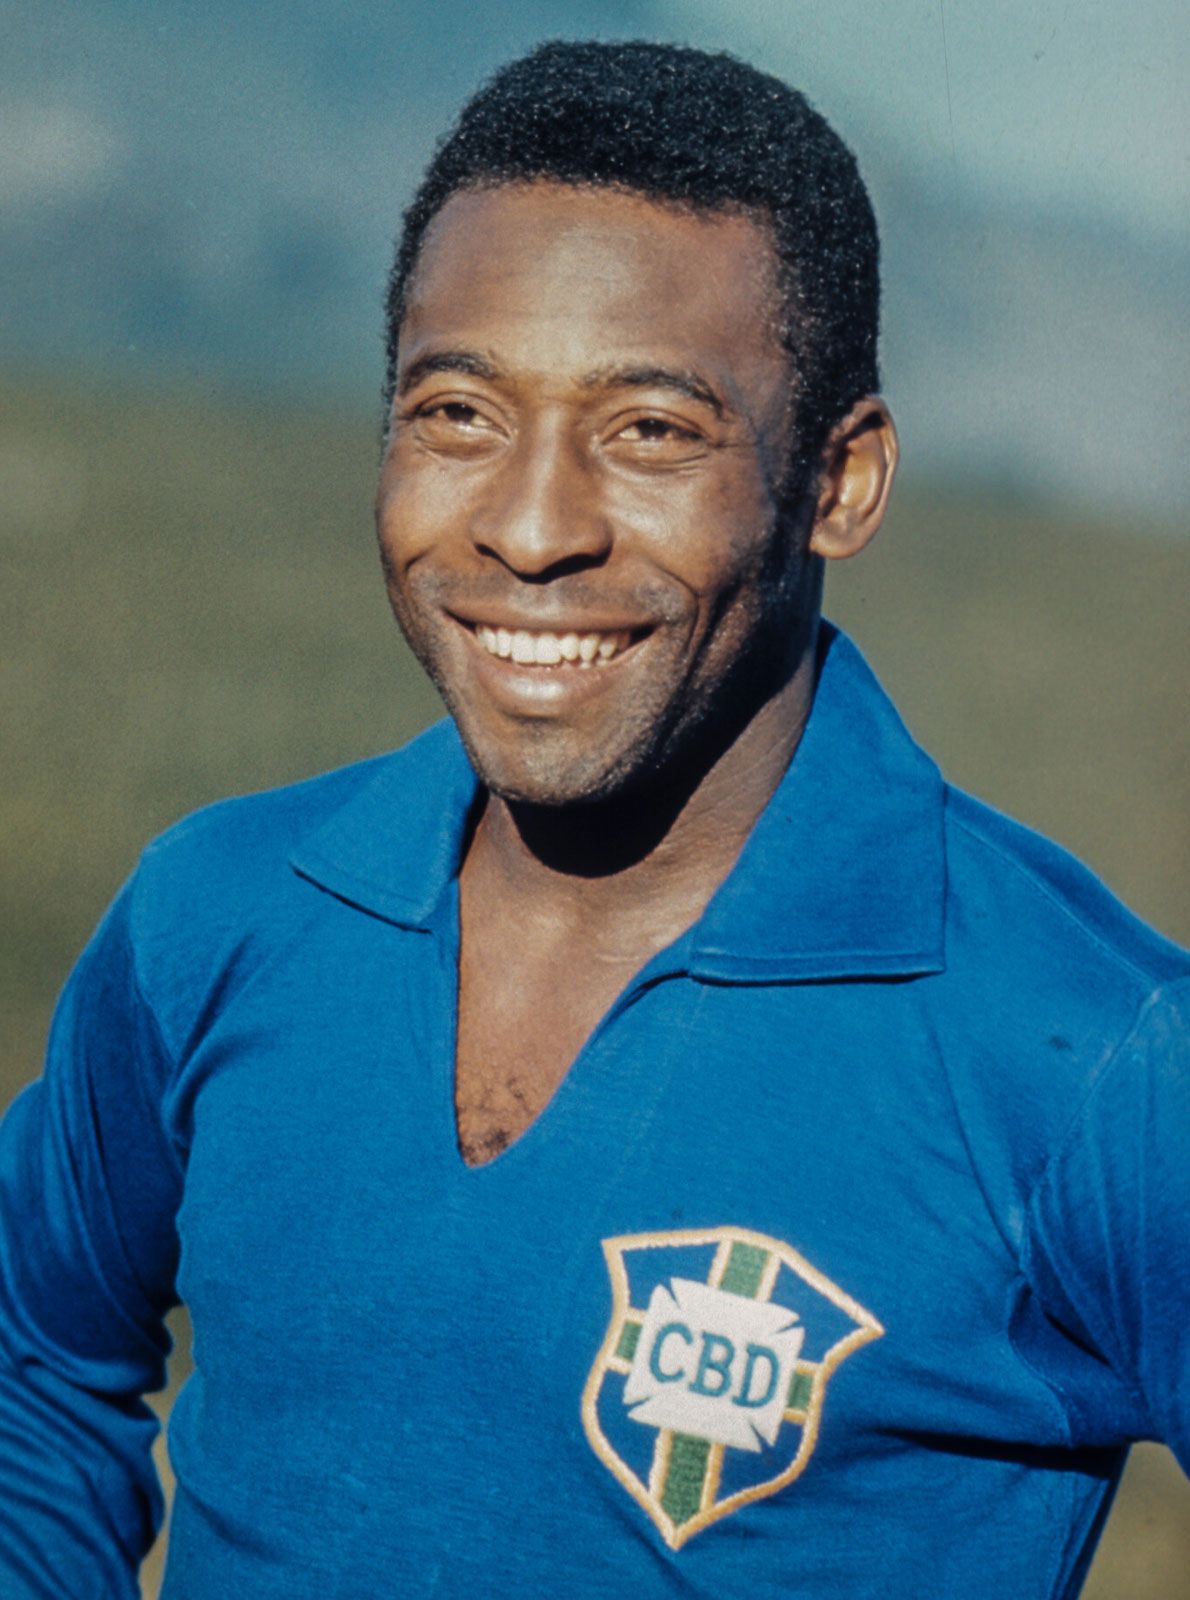 Cuộc đời thăng trầm của Vua bóng đá Pelé: Từng không đủ tiền mua 1 quả bóng đến huyền thoại 3 lần vô địch World Cup, tuổi 82 sức khỏe suy yếu, phải chống chọi với nhiều loại bệnh - Ảnh 1.